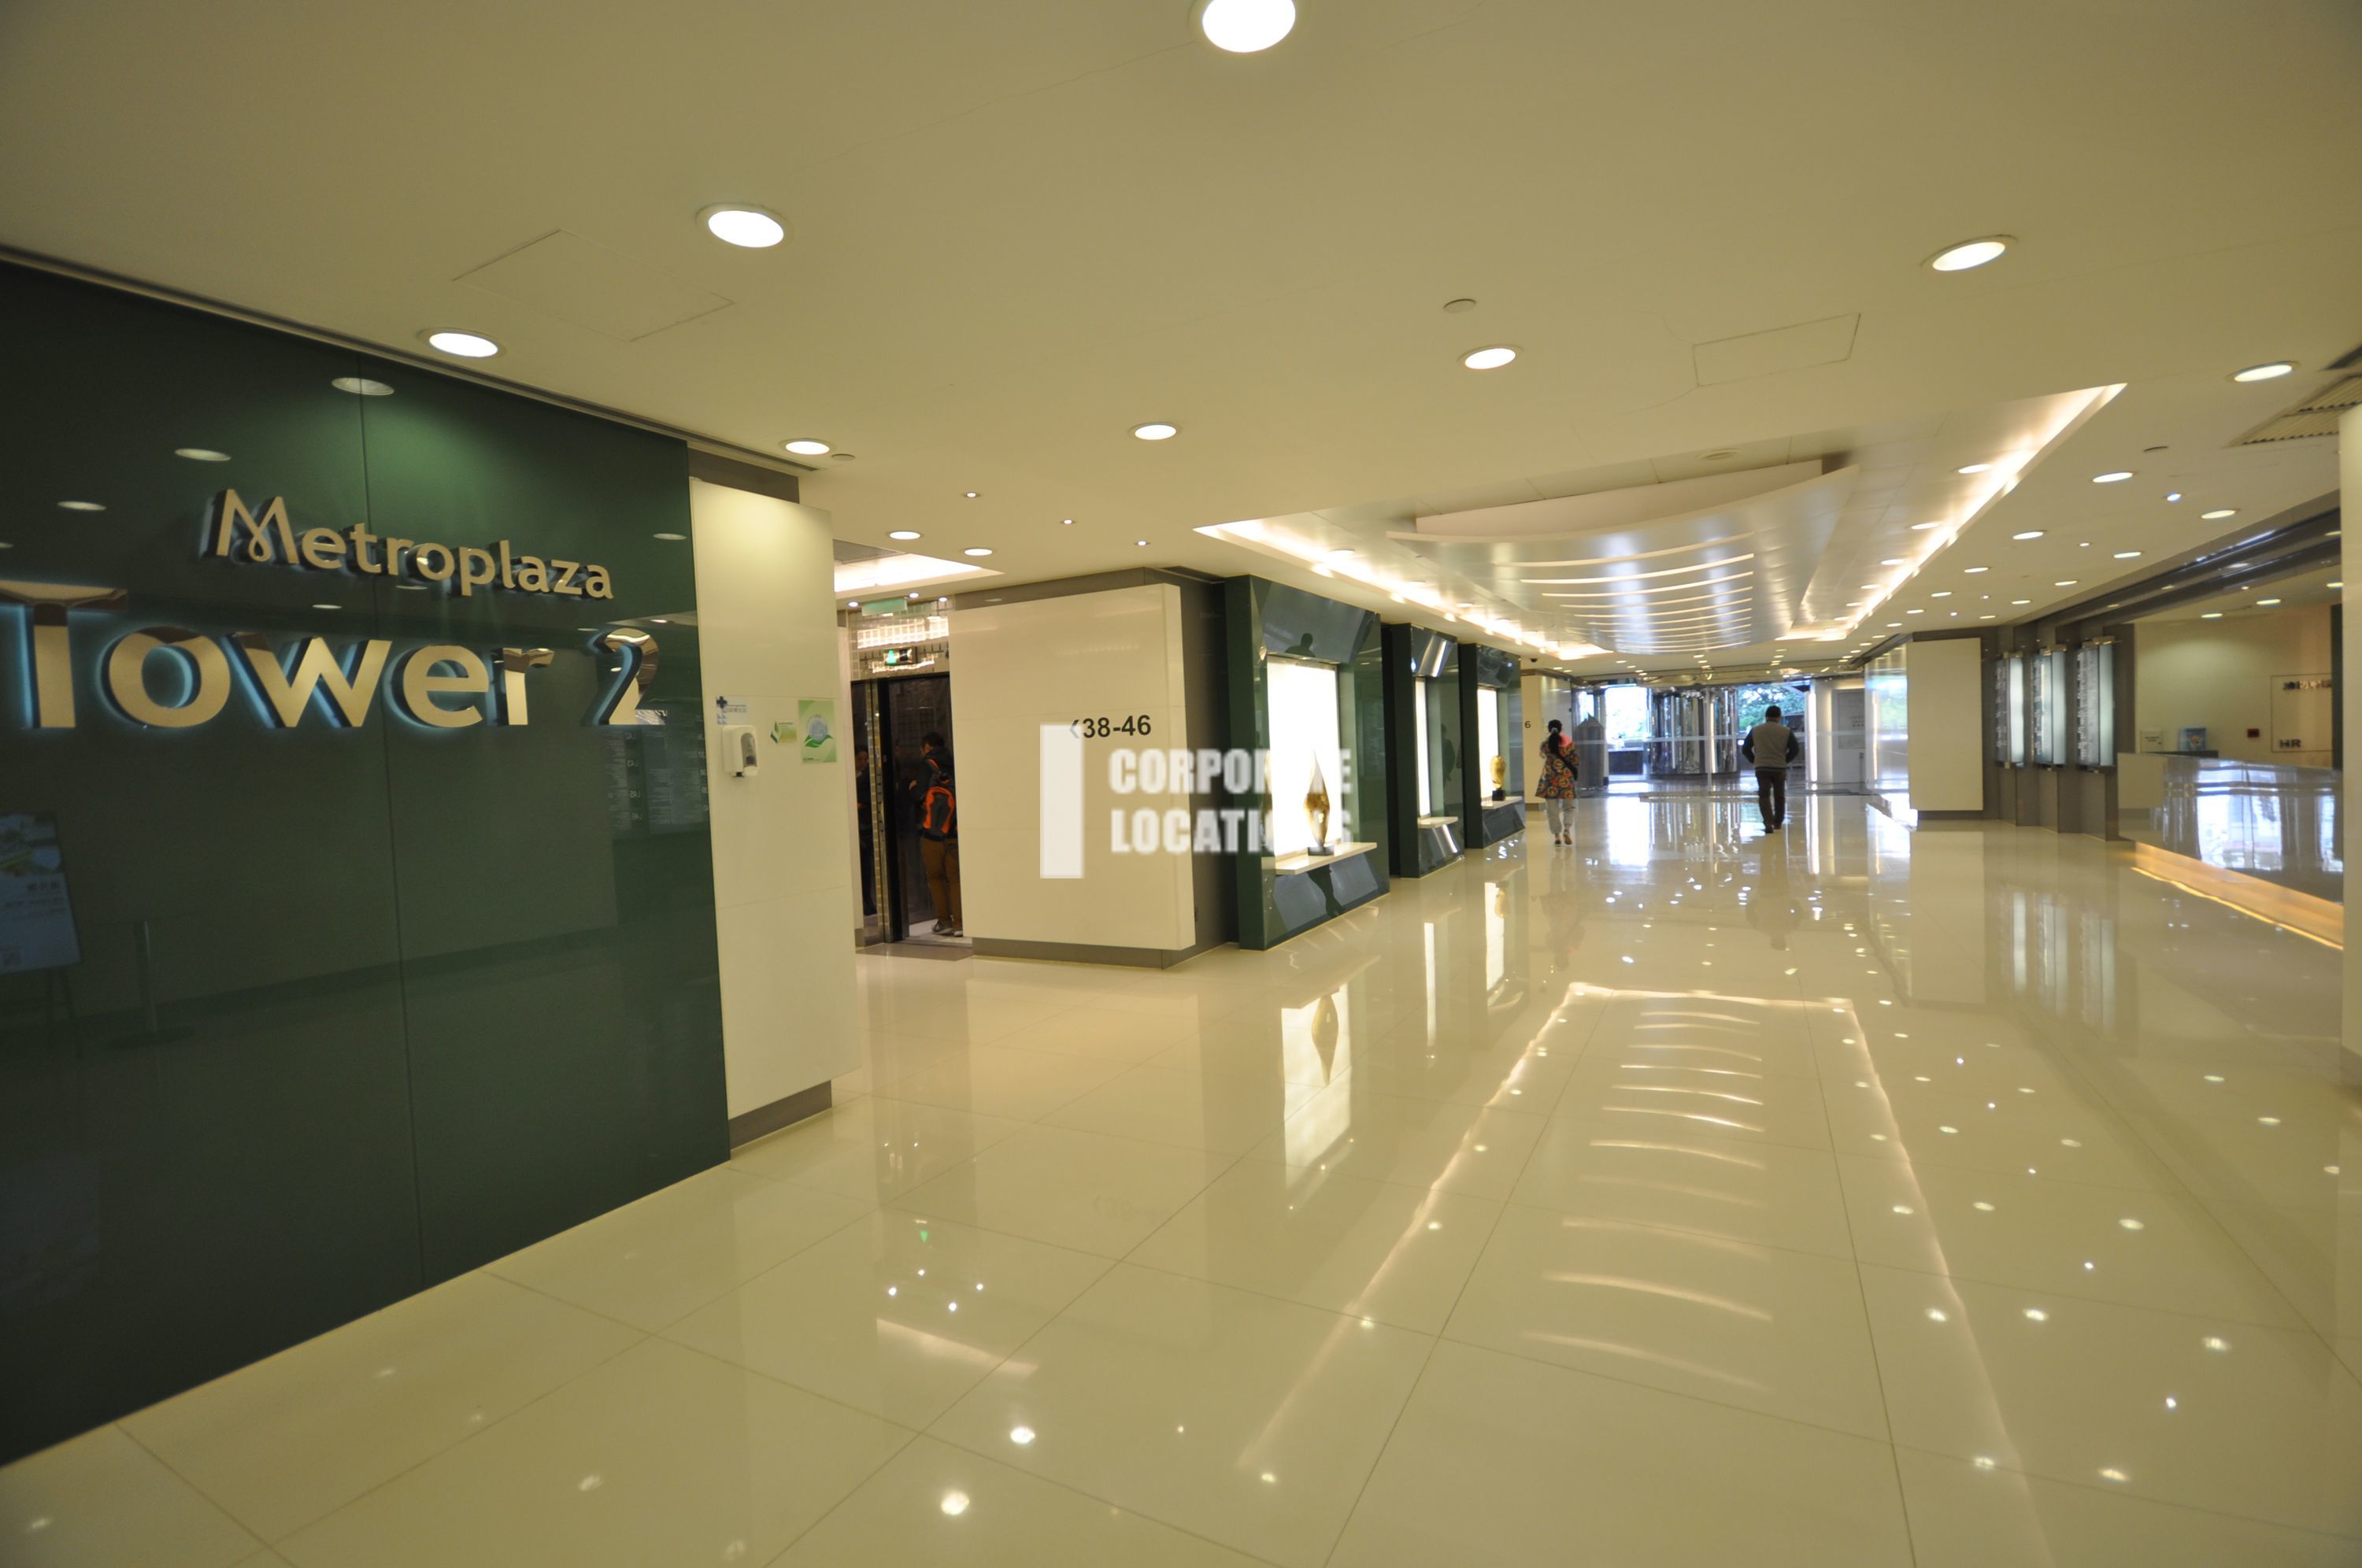 Office to rent in Metroplaza Tower 2 - Kwai Chung / Tsuen Wan